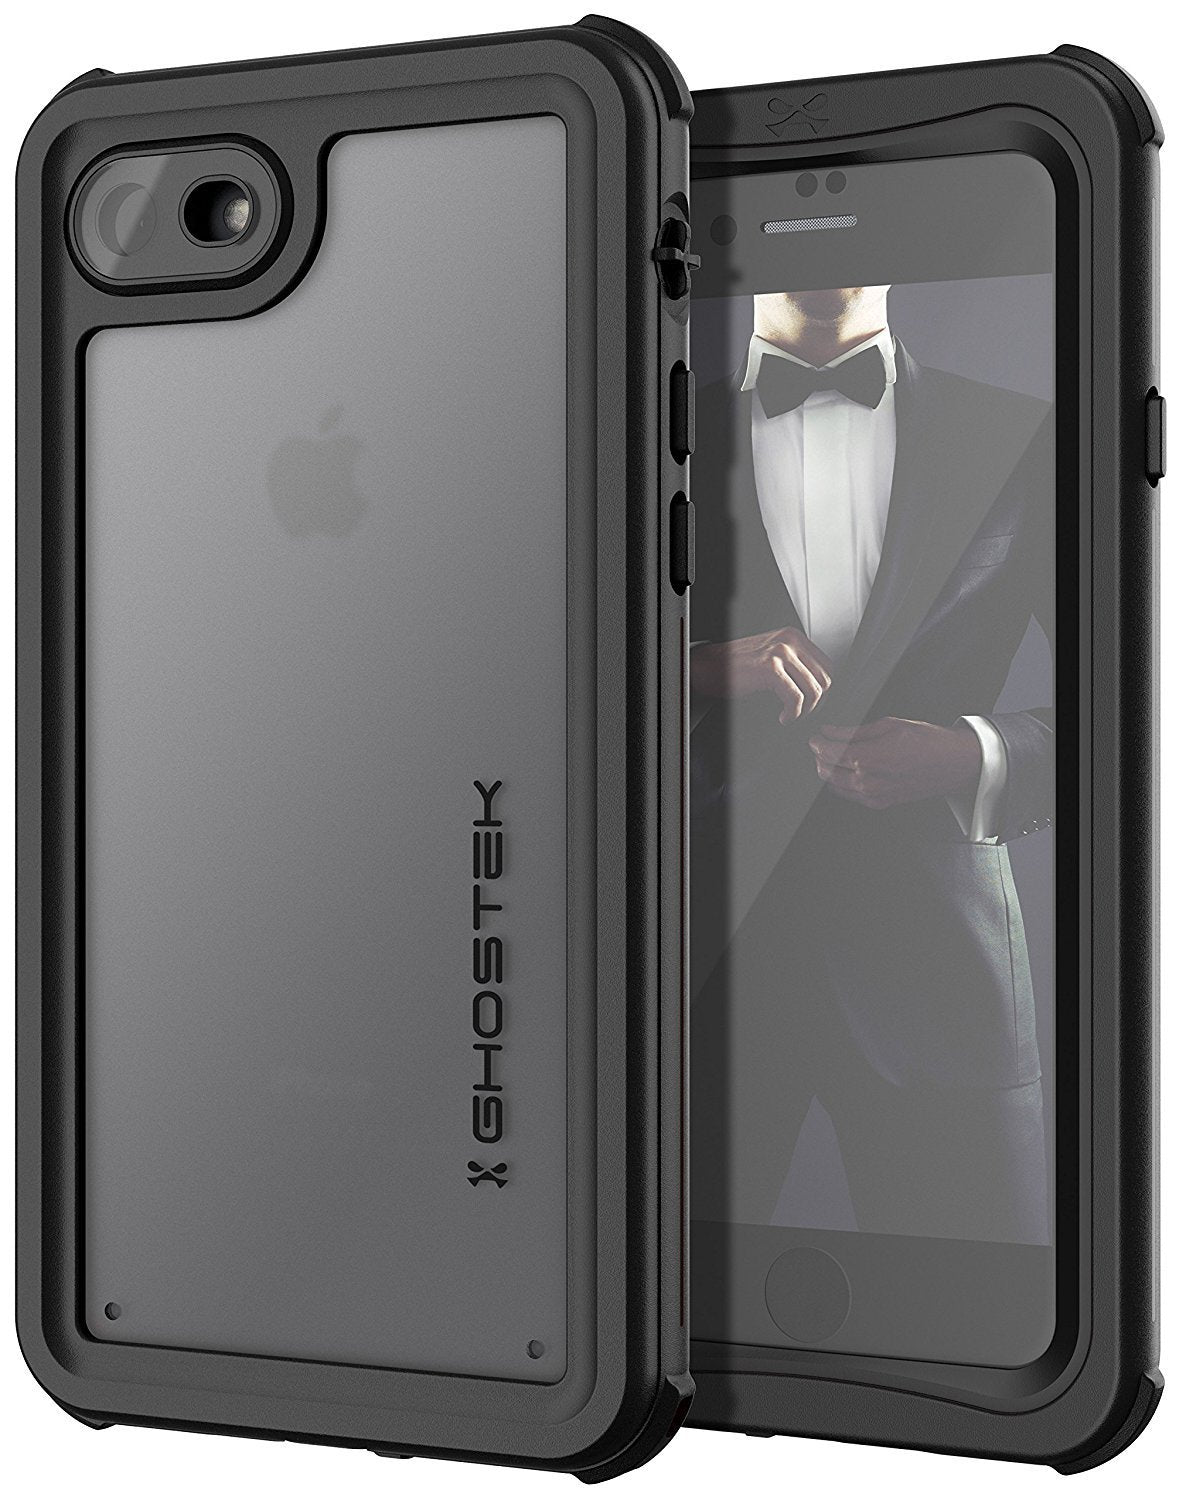 iPhone  7  Waterproof Case, Ghostek Nautical Series for iPhone  7  | Slim Underwater Protection | Ultra Fit | Swimming (Black)